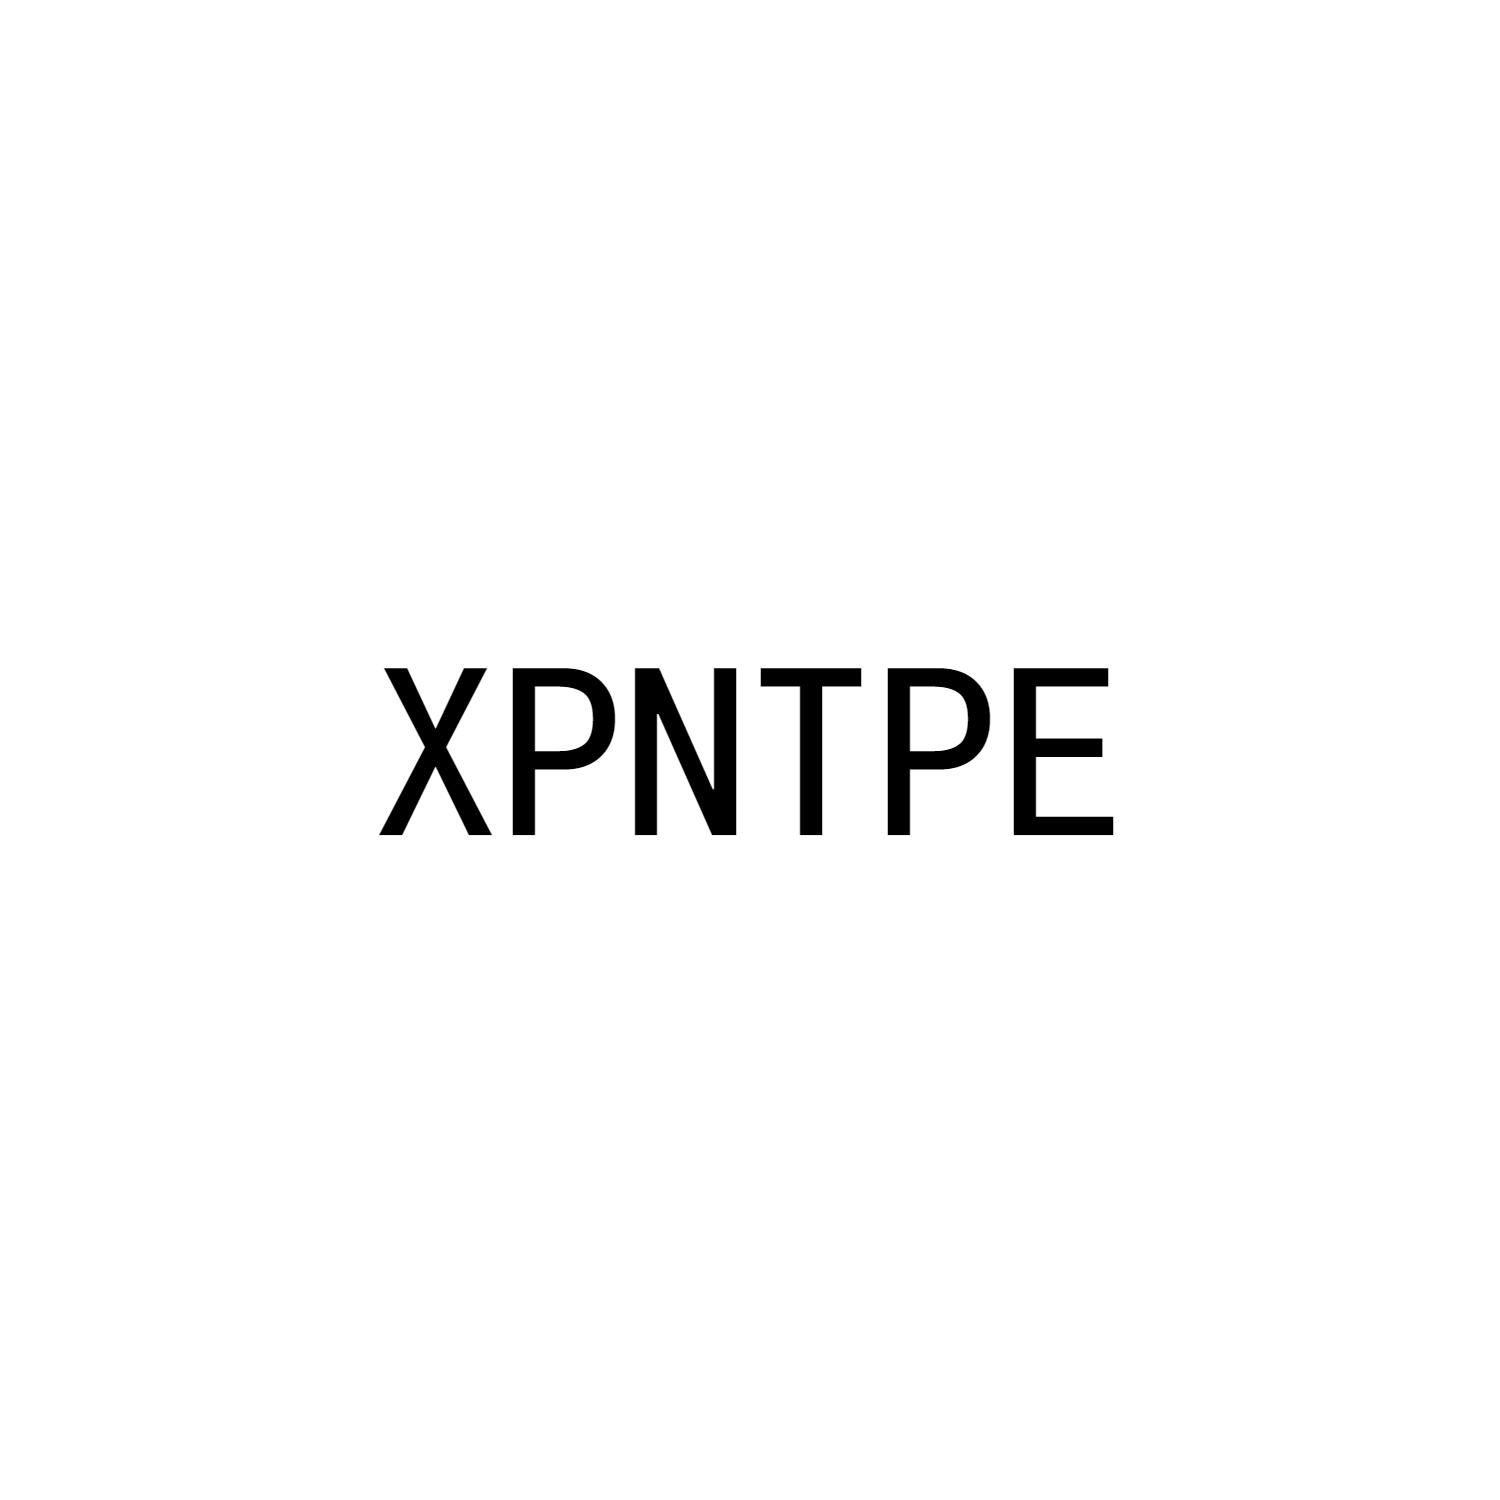 XPNTPE